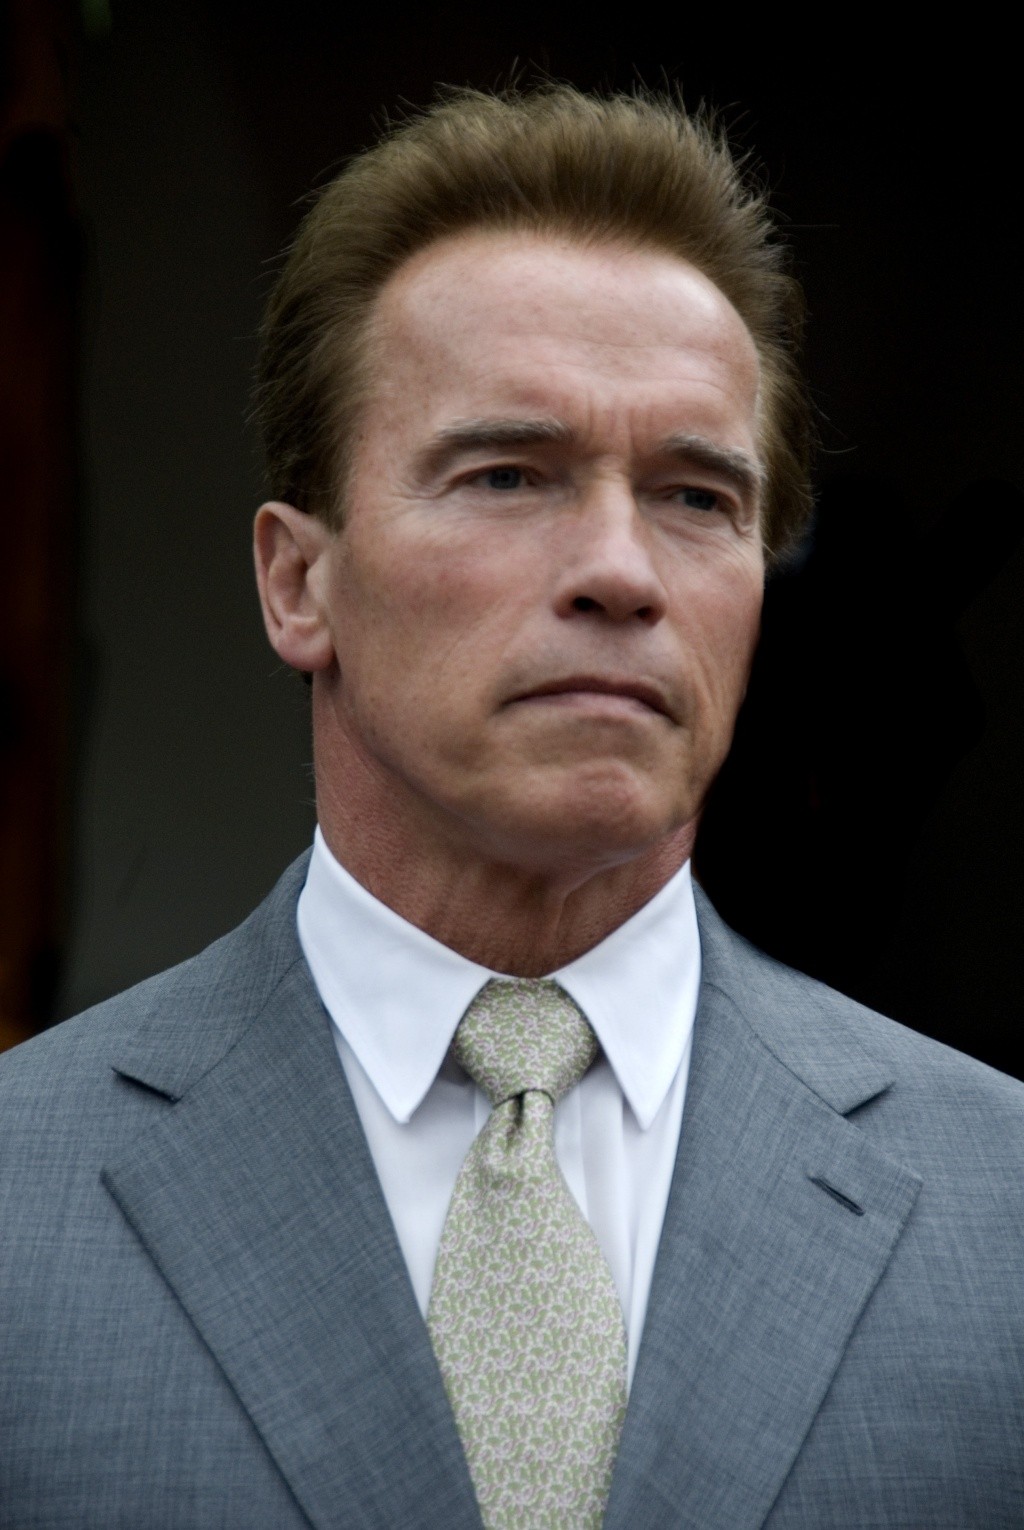 Arnold Schwarzenegger en photos - Page 5 San20a10